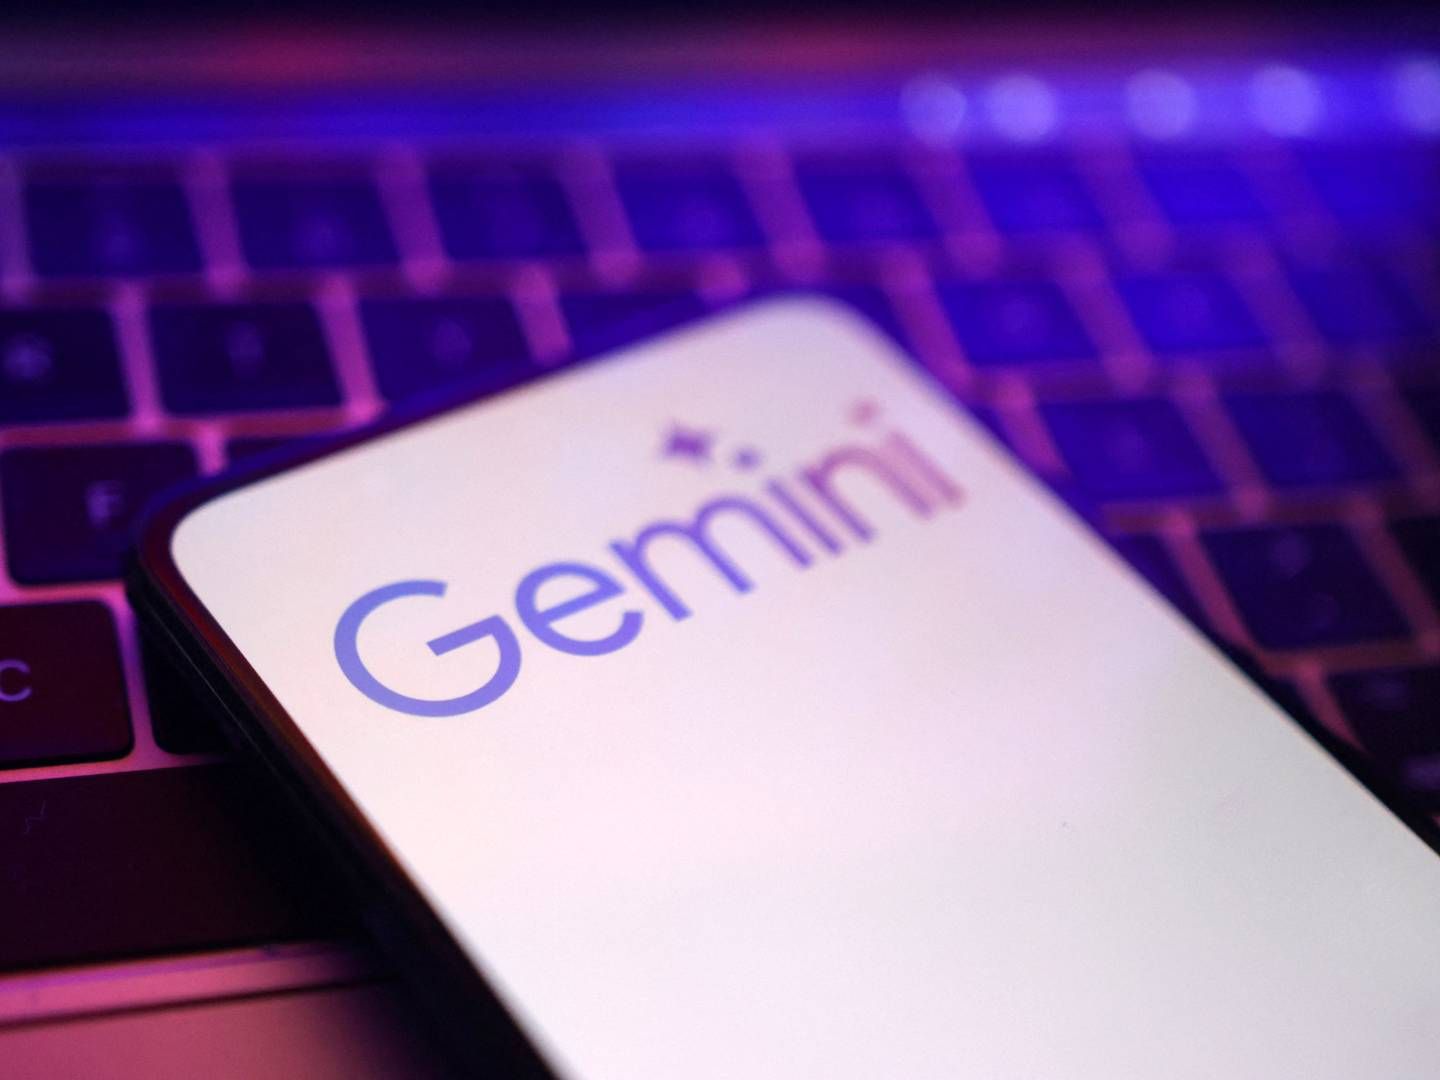 ”I Android-versionen er Gemini integreret på den måde, at man kan tilgå den som et et lag oven på skærmen direkte i andre apps. I iOS skal du sideløbende med arbejdet i andre apps ind i Gemini- eller Google-appen," siger Jesper Vangkilde, der er kommunikationschef for Google Danmark.